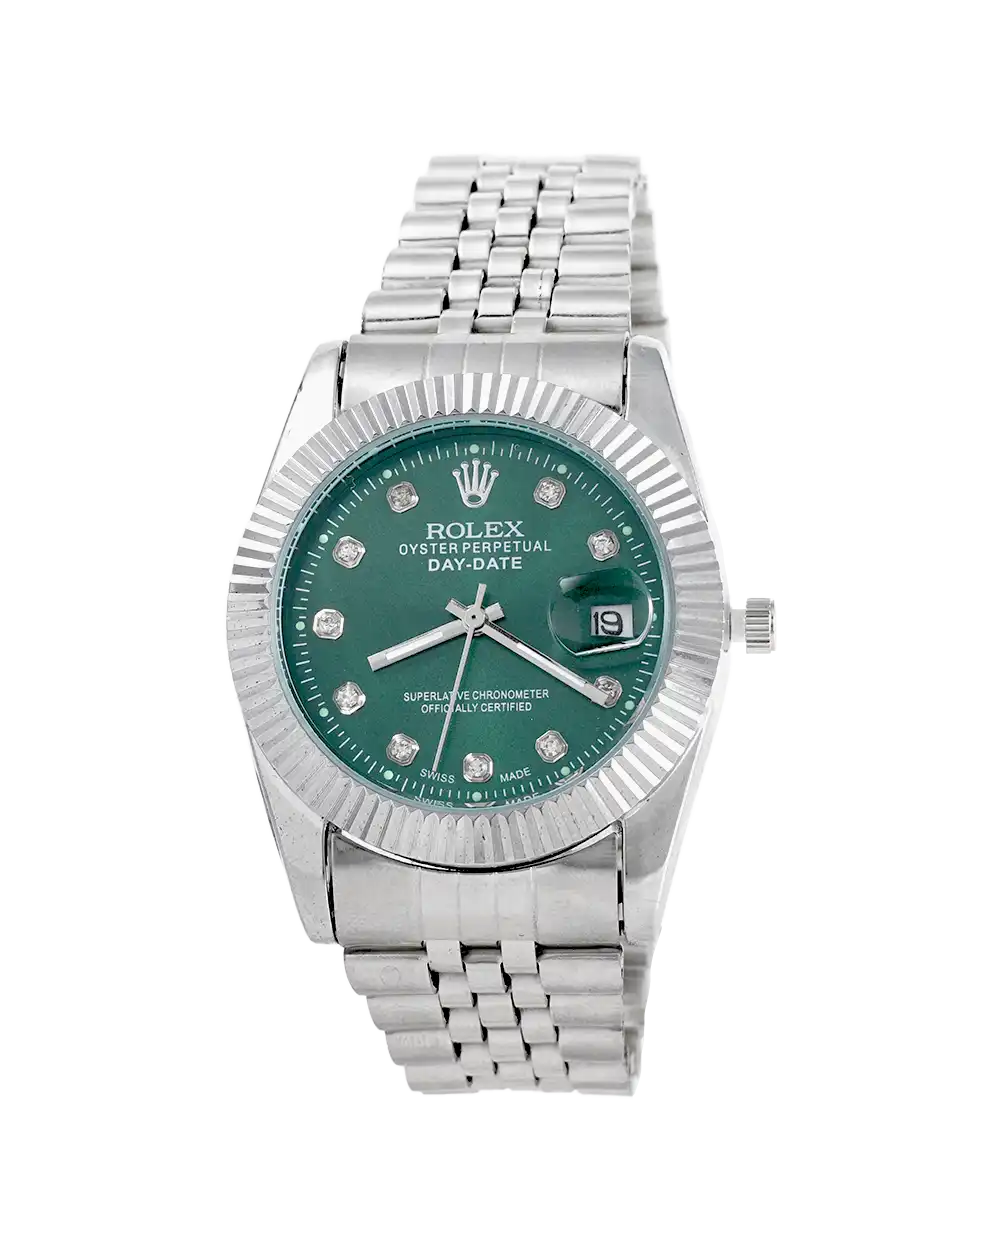 خرید ساعت مچی مردانه رولکس ROLEX طرح دیت جاست مدل 1655 DATEEJUST صفحه سبز با بهترین قیمت به همراه ارسال رایگان درب منزل و جعبه ی کادویی